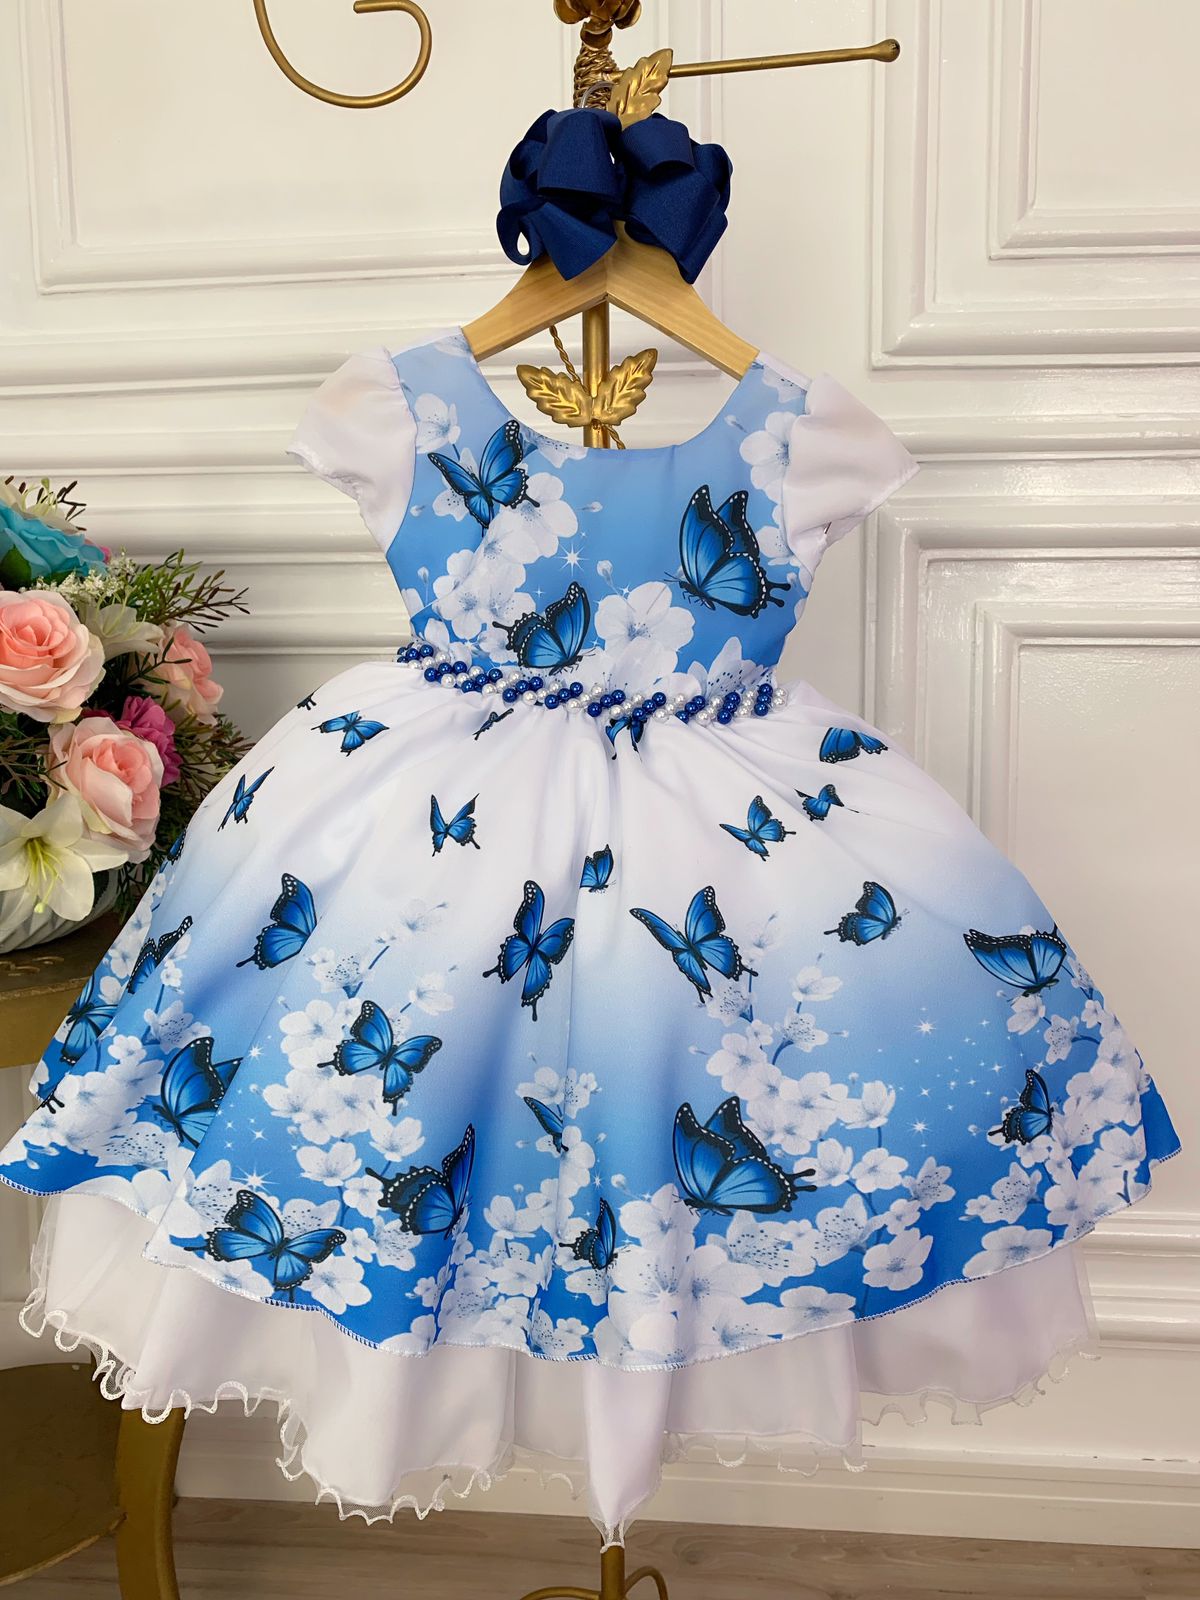 Vestido Infantil Branco e Azul Jardim das Borboletas Luxo